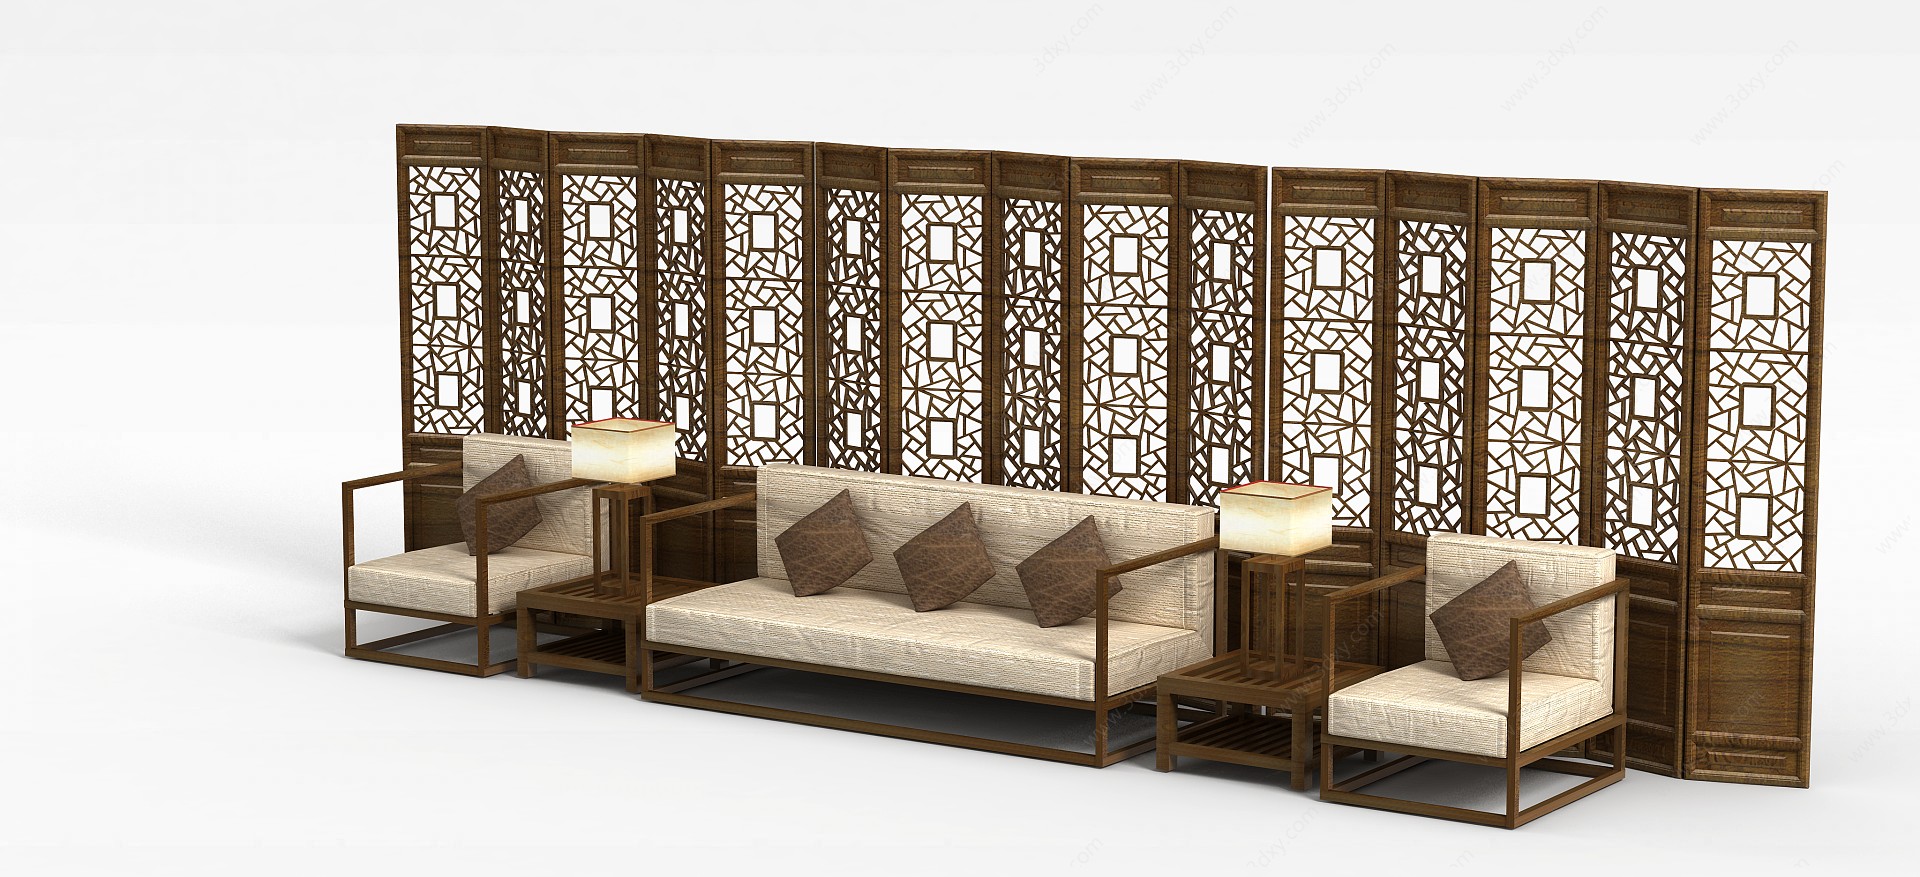 中式实木沙发茶几屏风组合3D模型